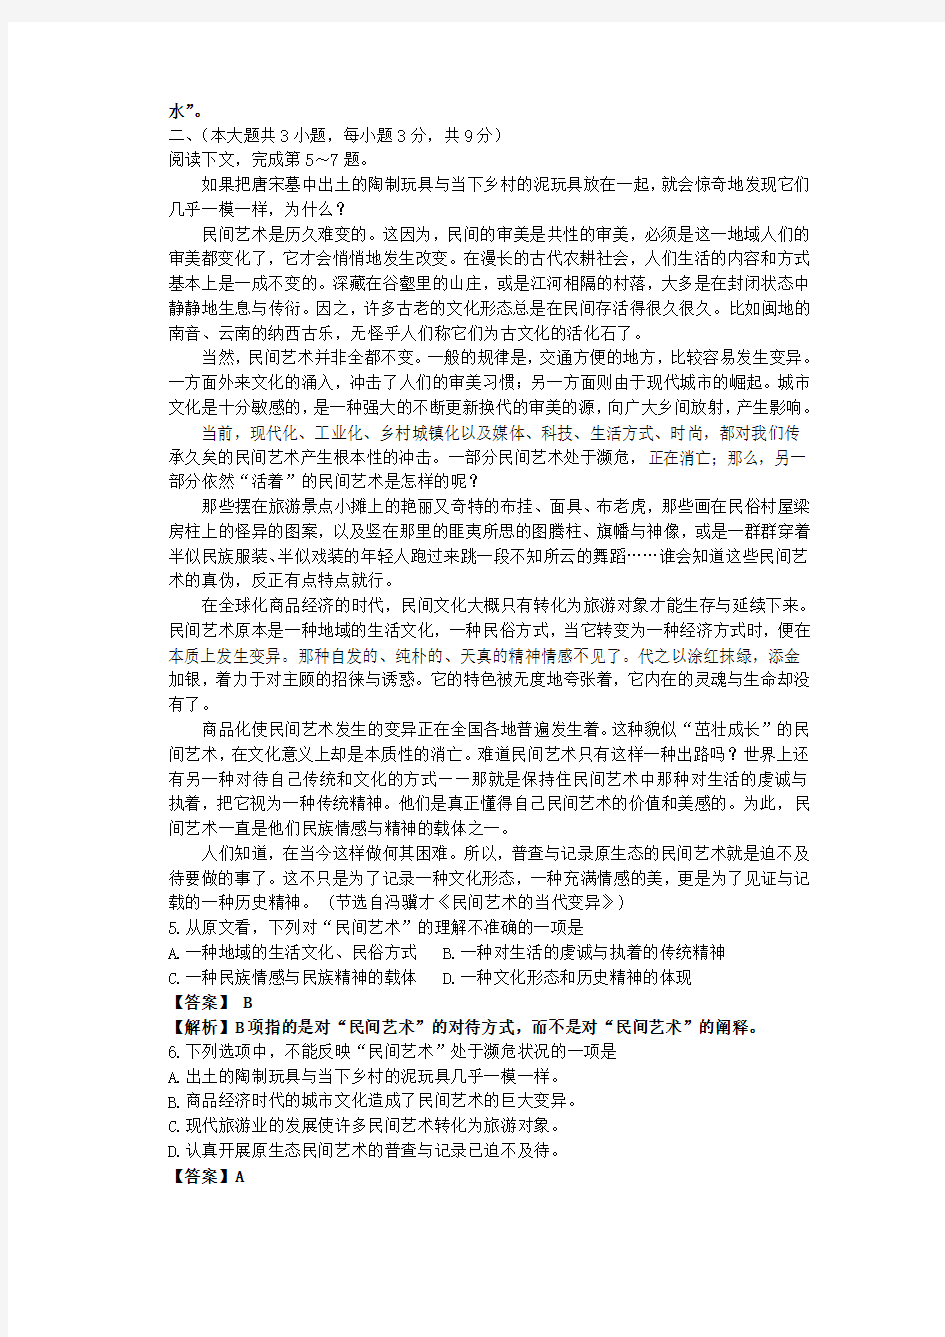 高考重庆语文试卷逐题详解